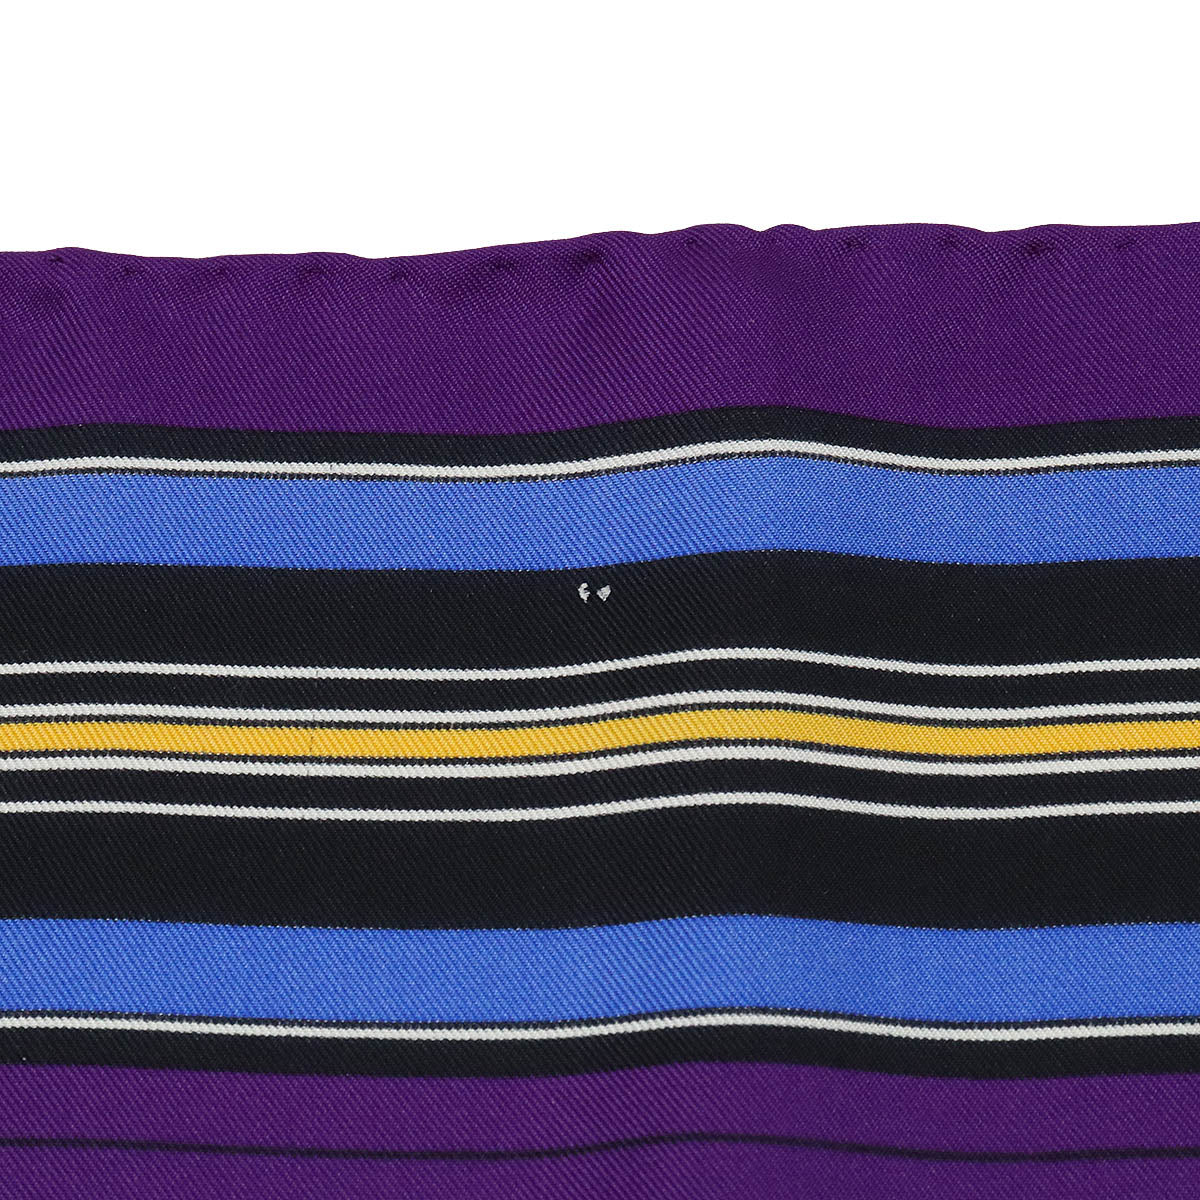 HERMES 愛馬仕 Carré 90 圍巾 Couvertures et Tenues de Jour 馬服裝 100% 真絲紫色多色